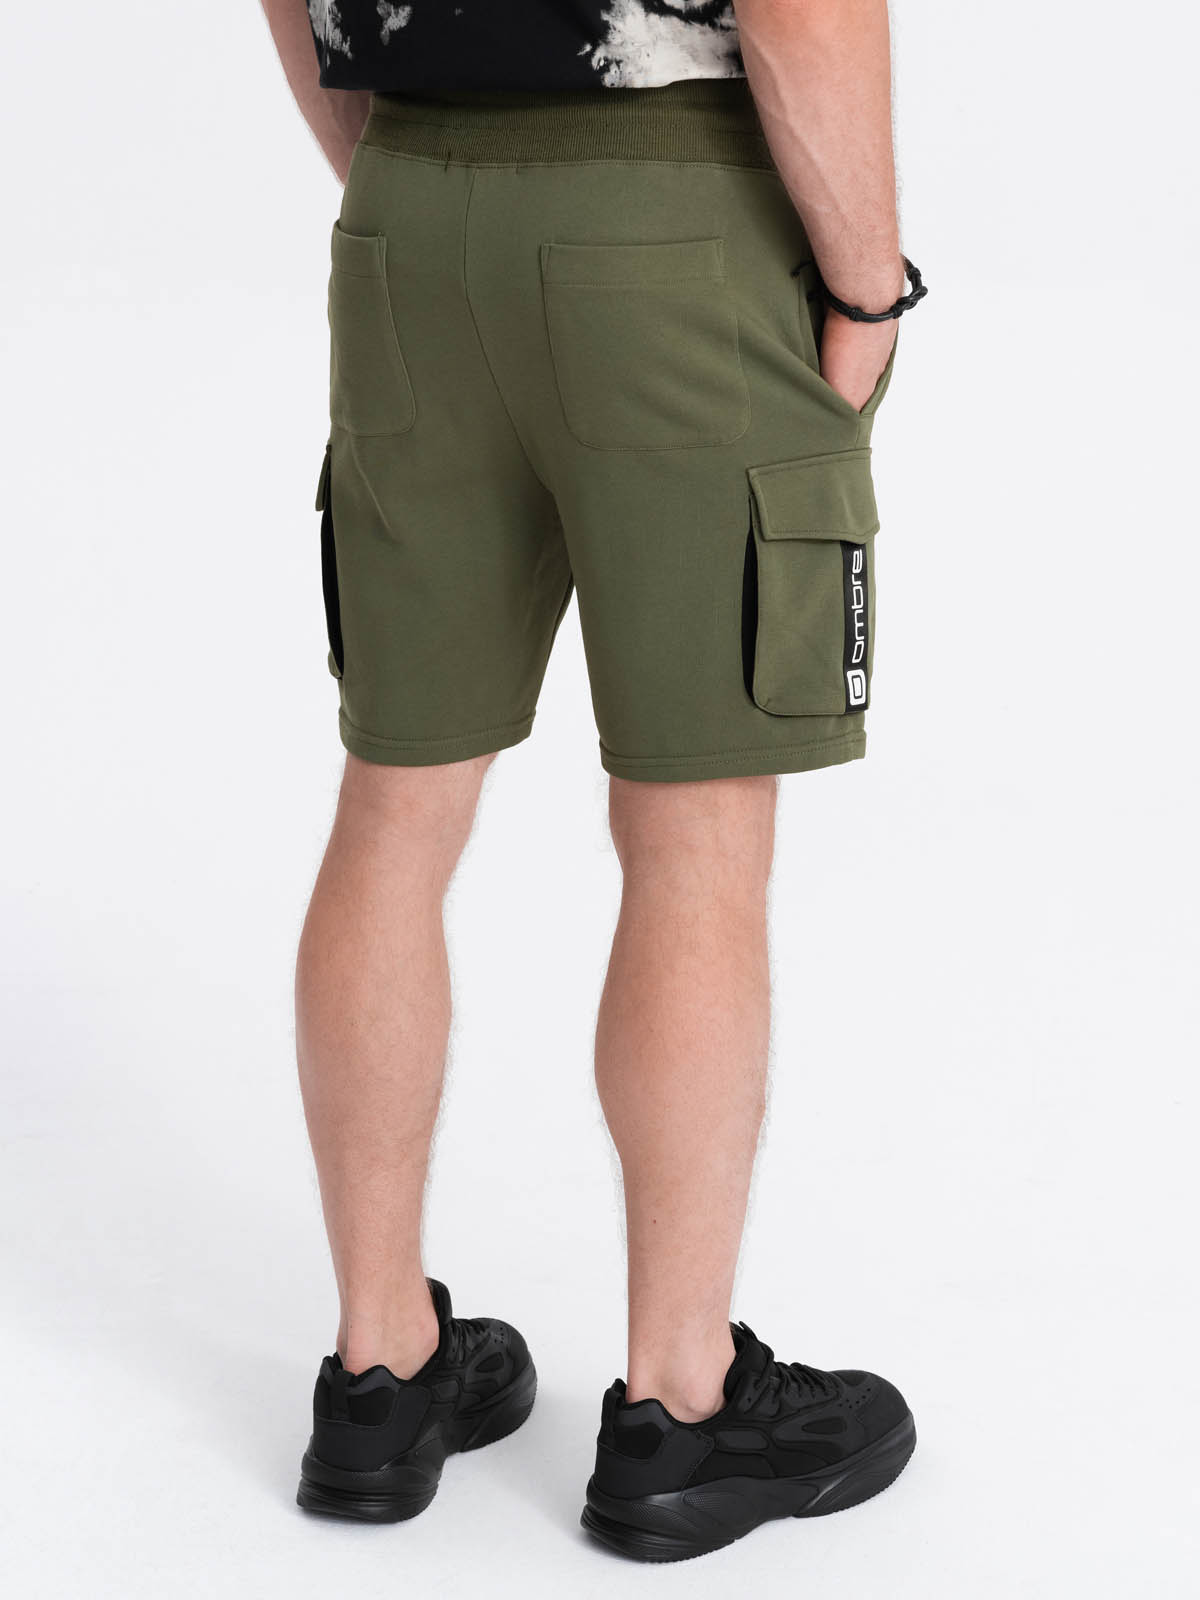 Men's shorts with cargo pockets - olive V4 OM-SRSK-0106